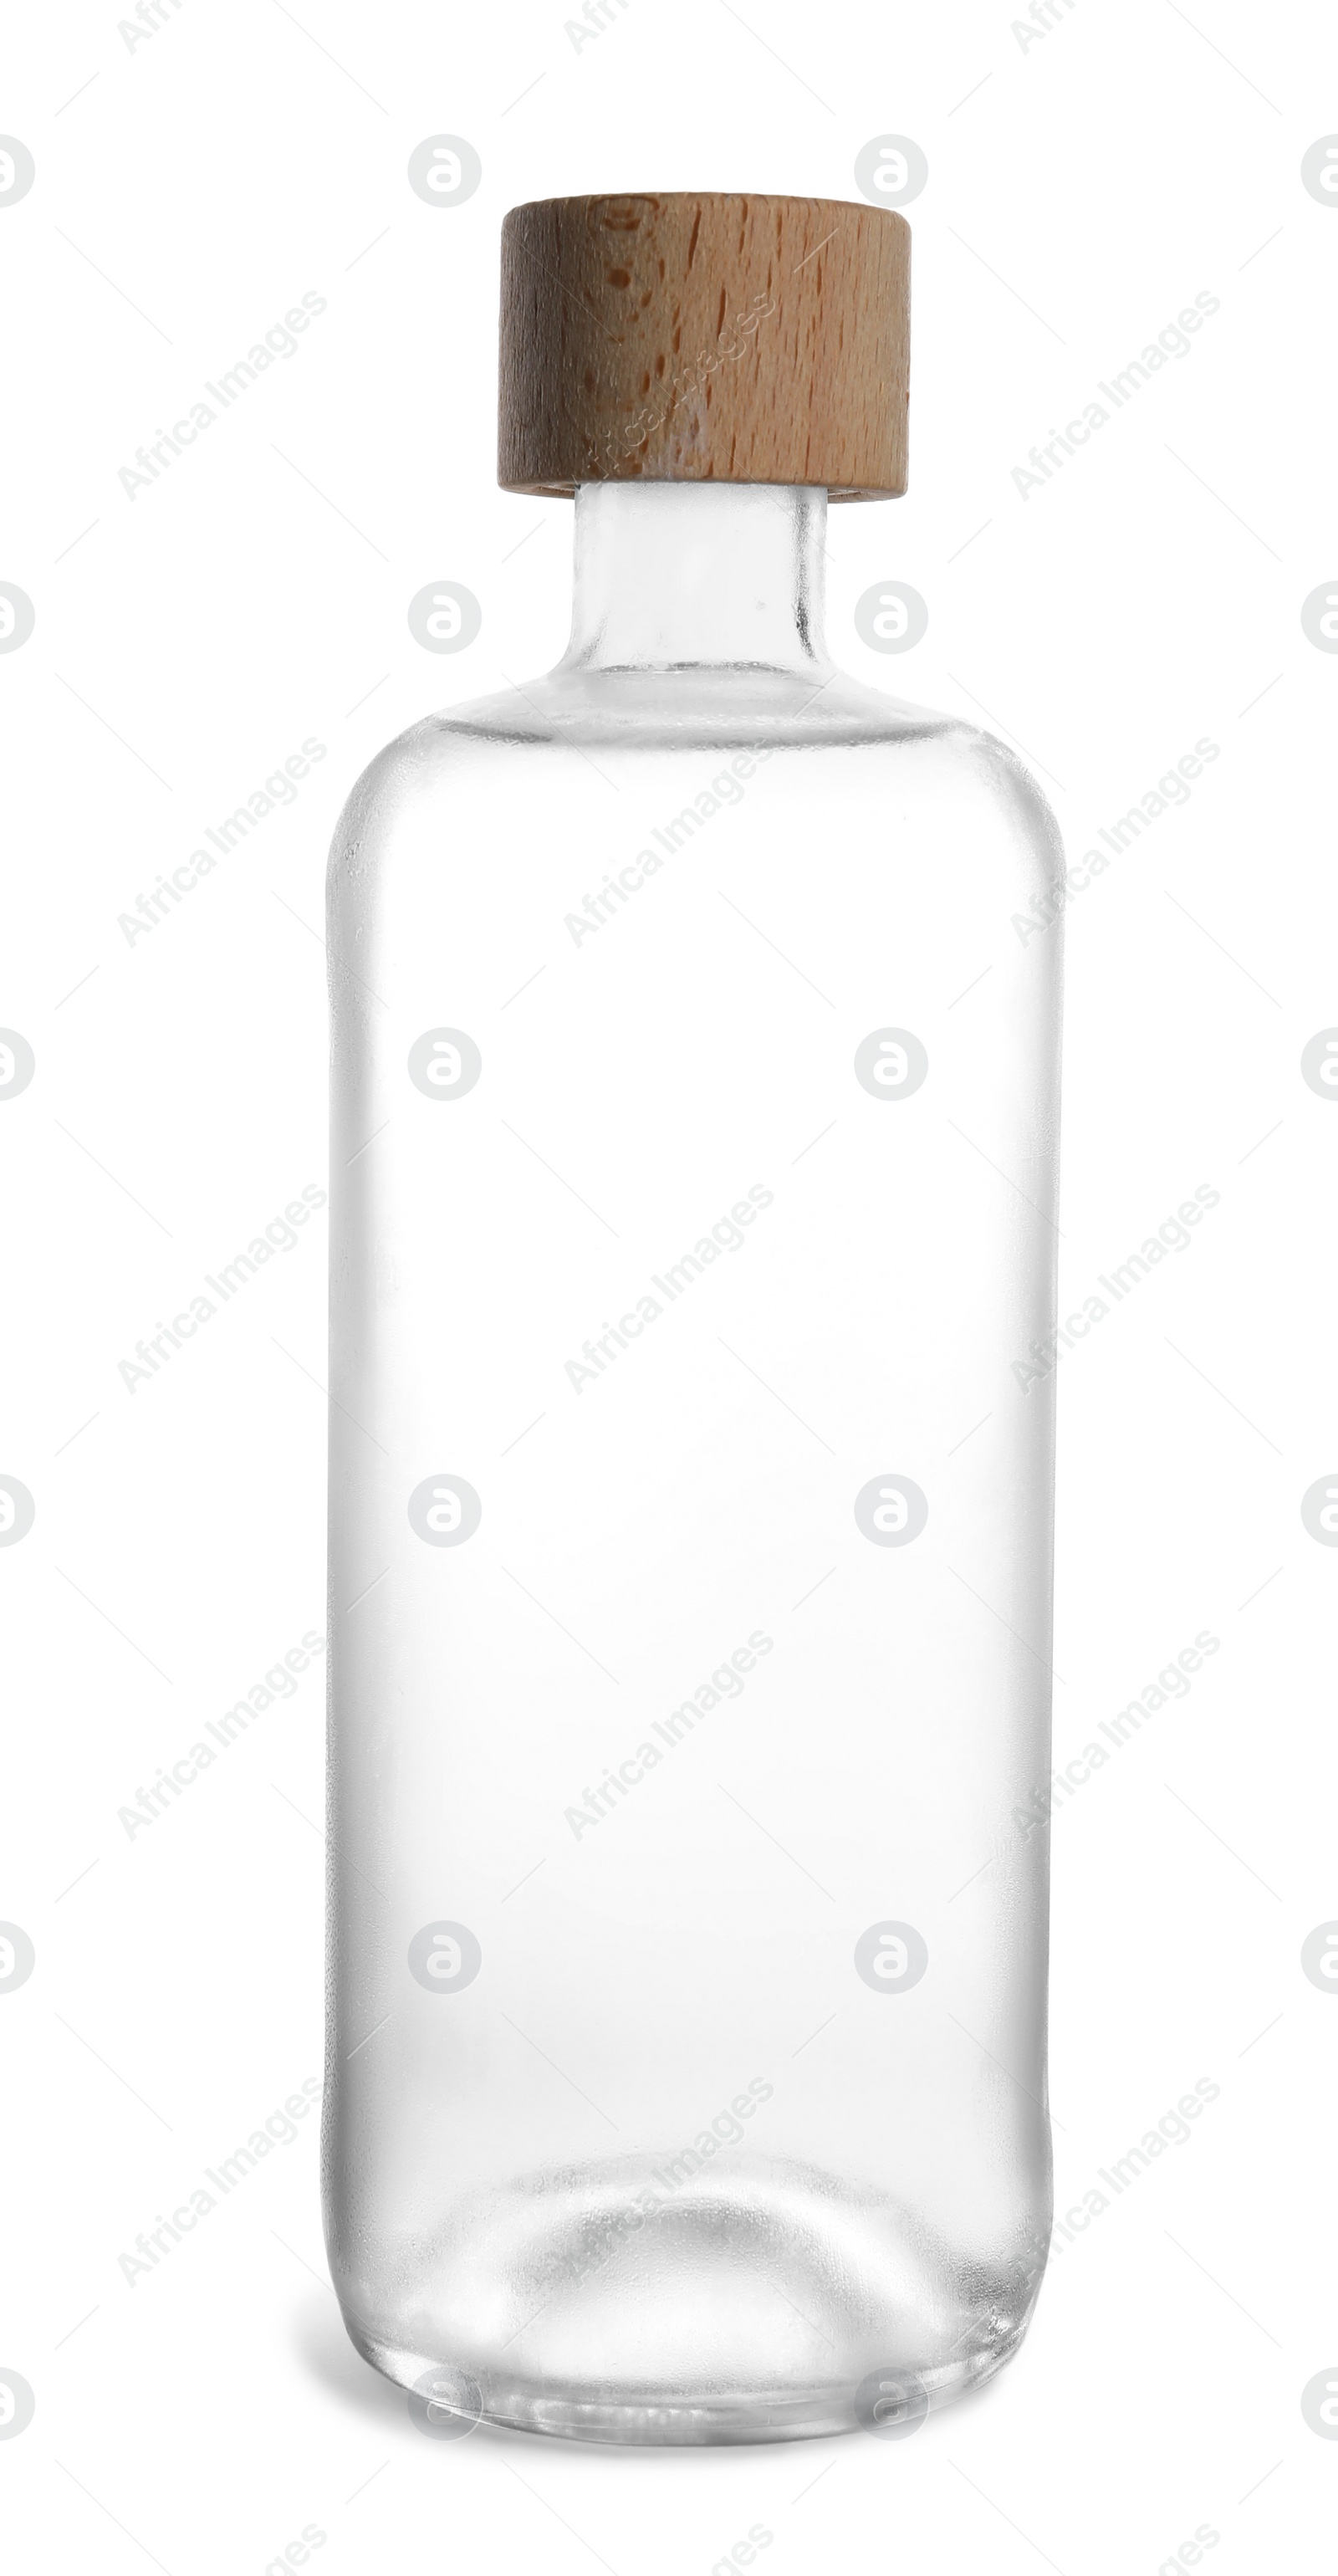 Photo of Bottle of vodka on white background. Alcoholic drink